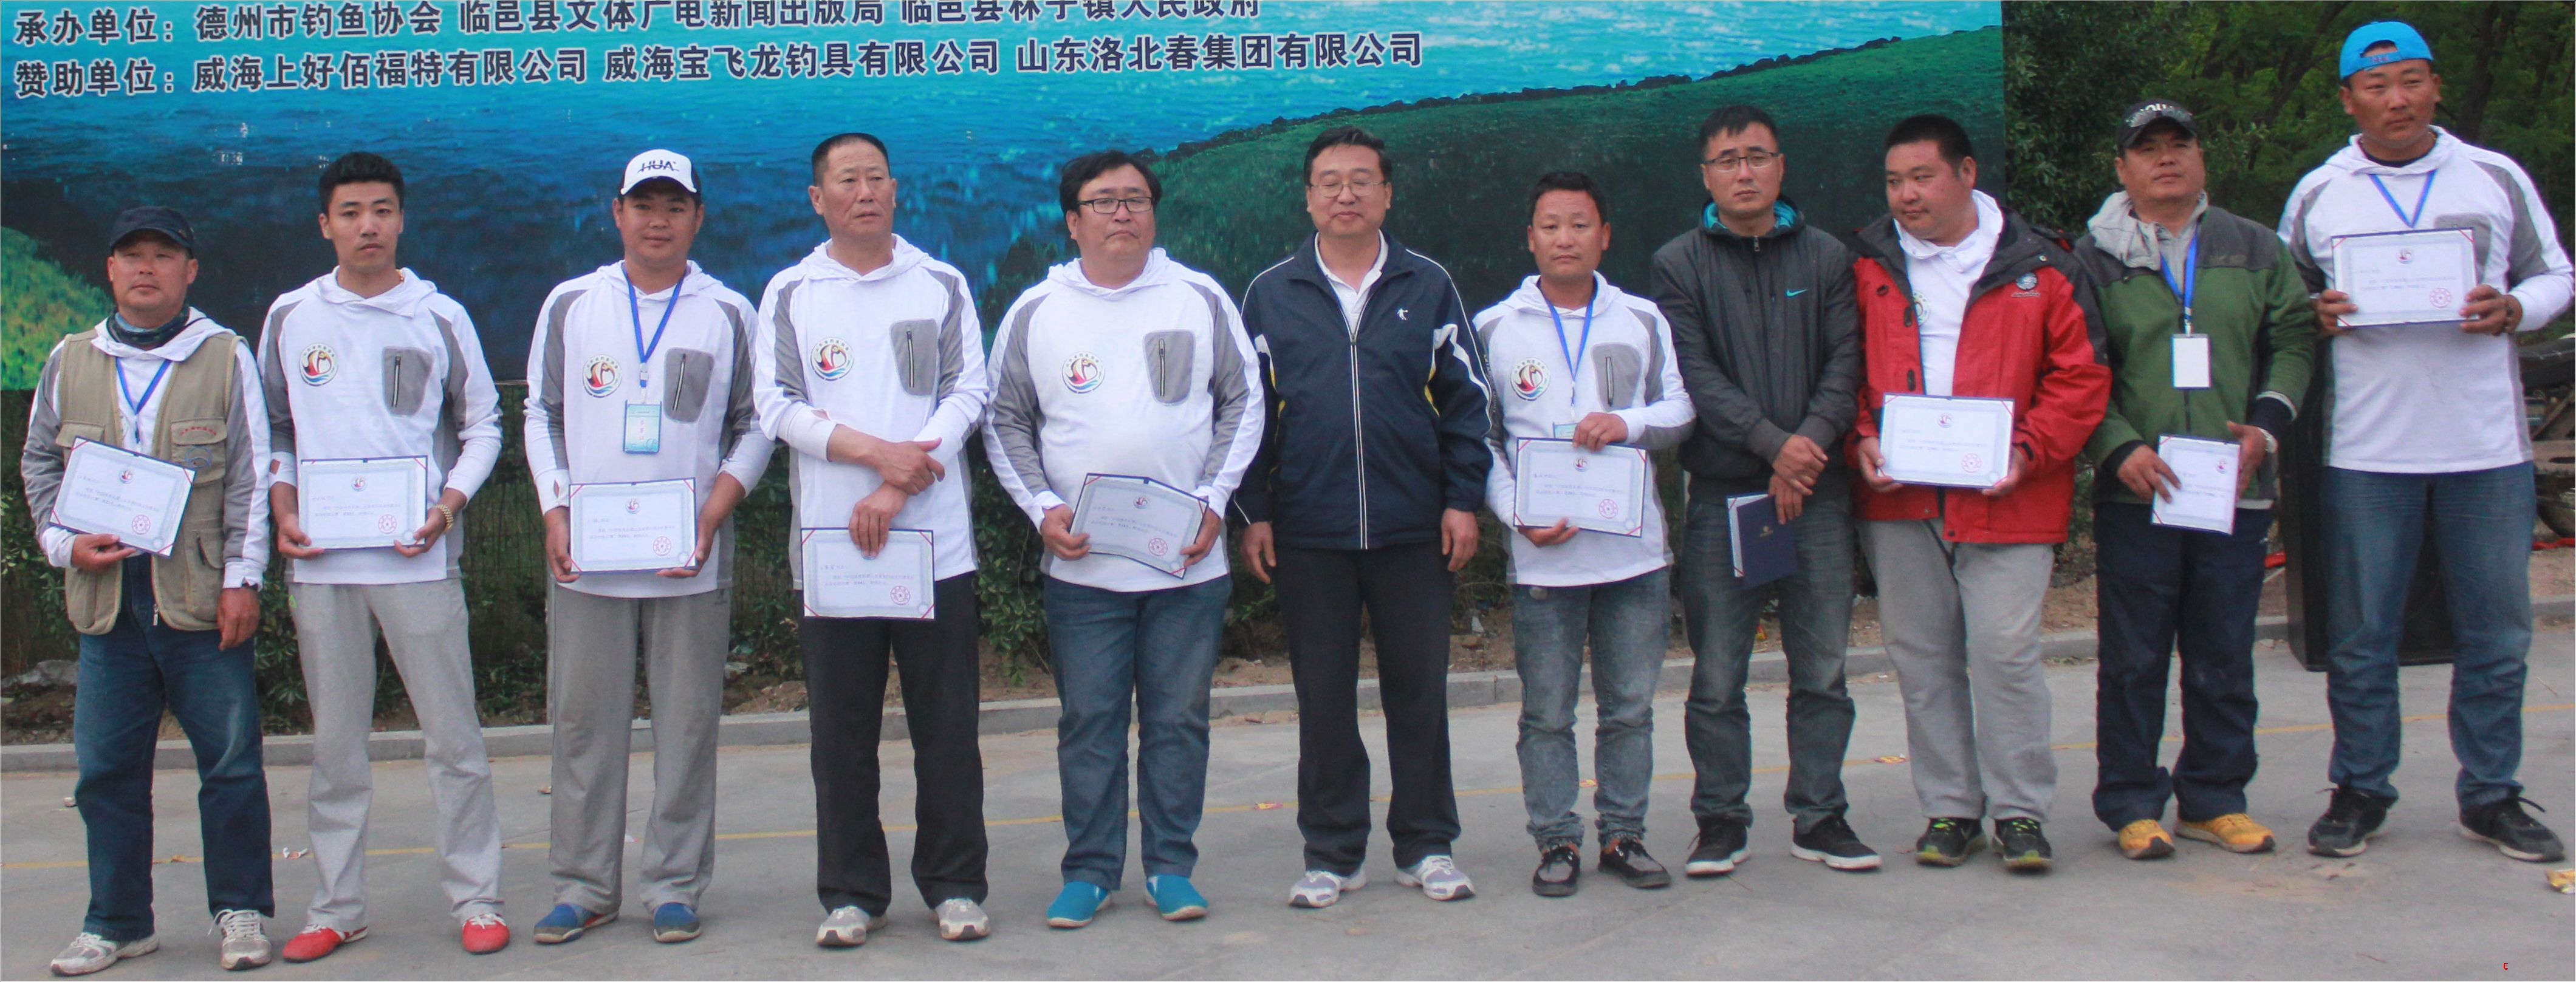 中国体育彩票山东省第四届全民健身运动会钓鱼比赛第二十一至三十名